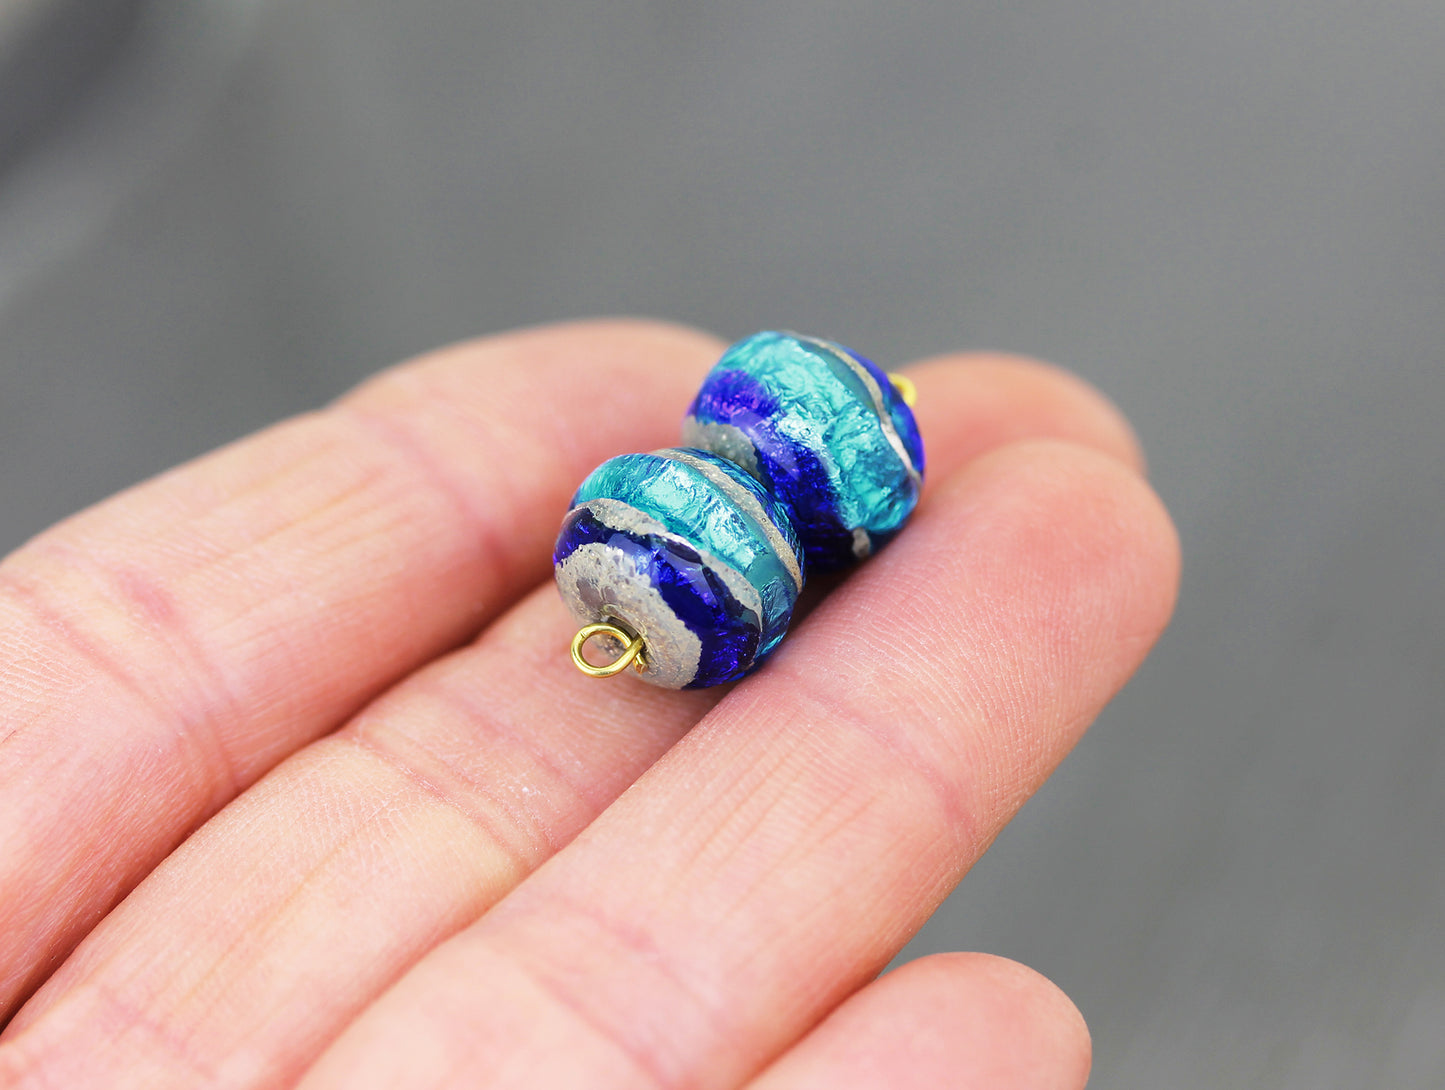 #124029 - Aqua/cobalt ombré Sea Rocks bead pair